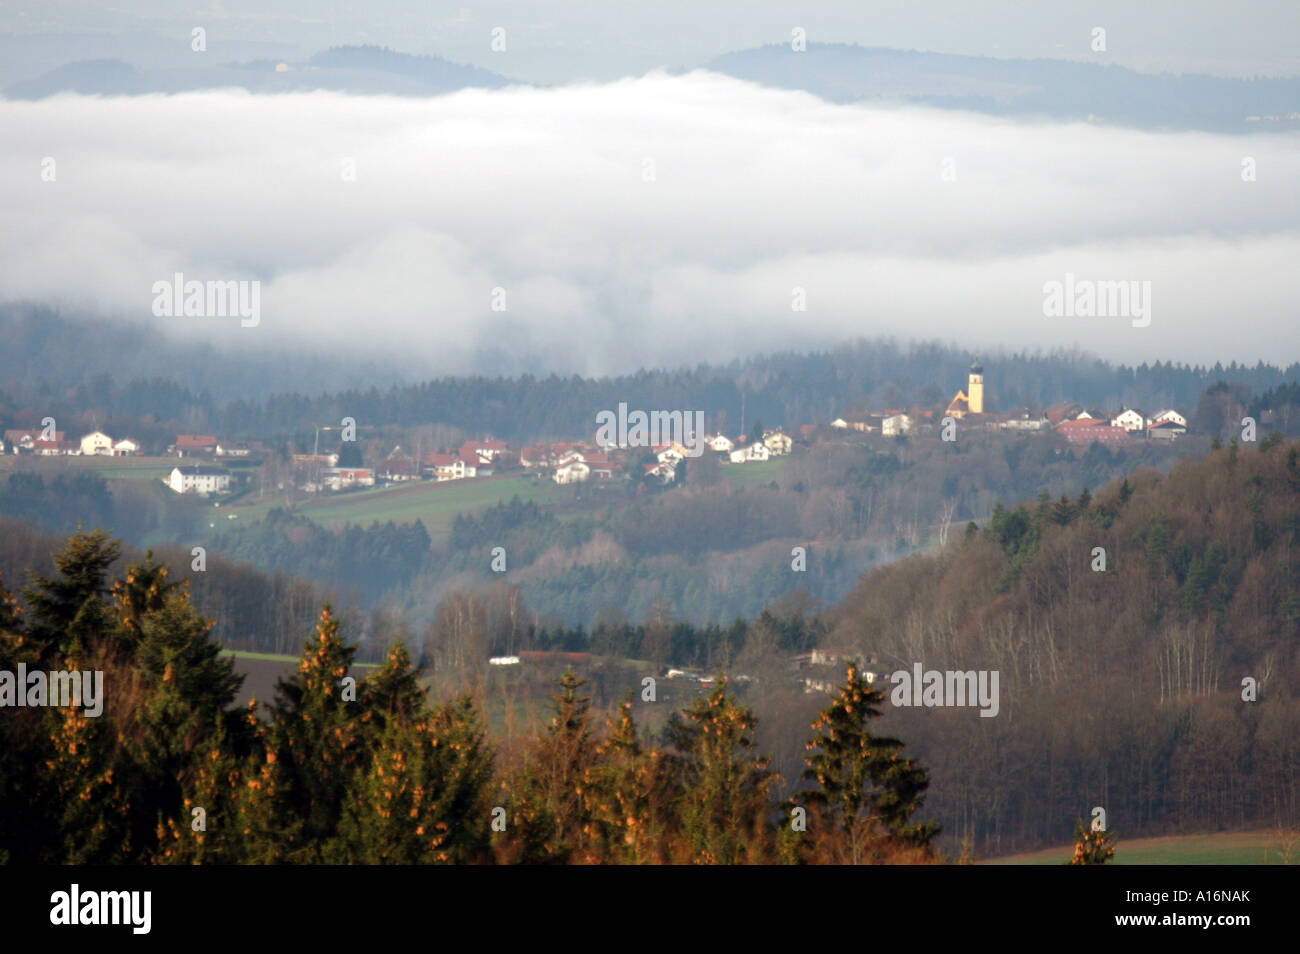 Dorf Berg in der Nähe von Deggendorf, an einem nebligen Tag im Herbst, Bayerischer Wald, Bayern, Deutschland. Foto: Willy Matheisl Stockfoto